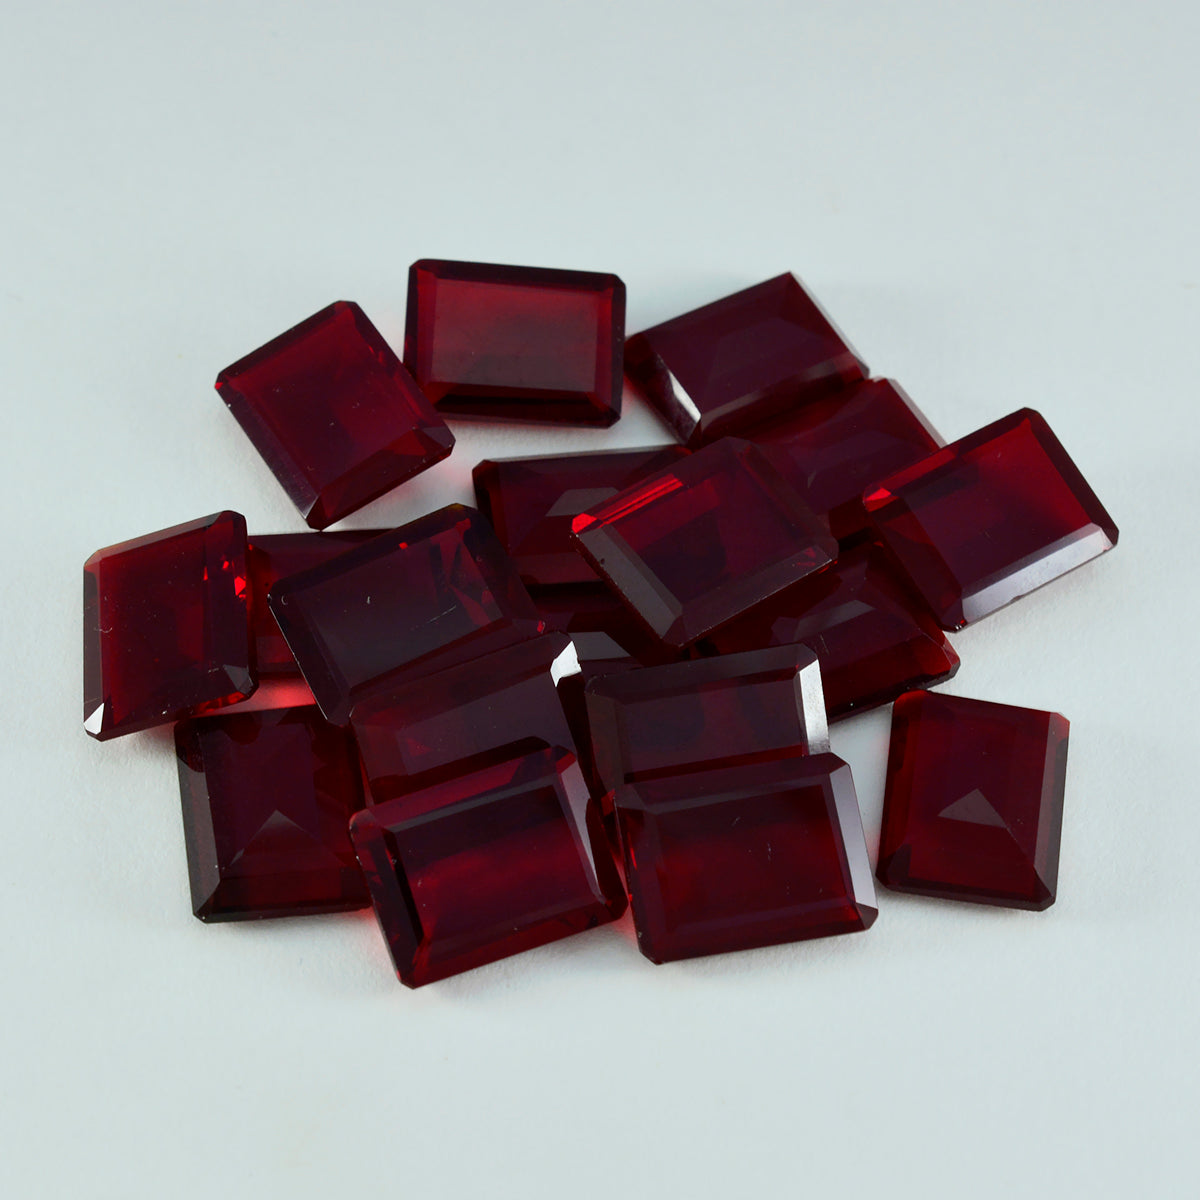 Riyogems 1 Stück roter Rubin mit CZ, facettiert, 9 x 11 mm, Achteckform, erstaunliche Qualität, loser Edelstein